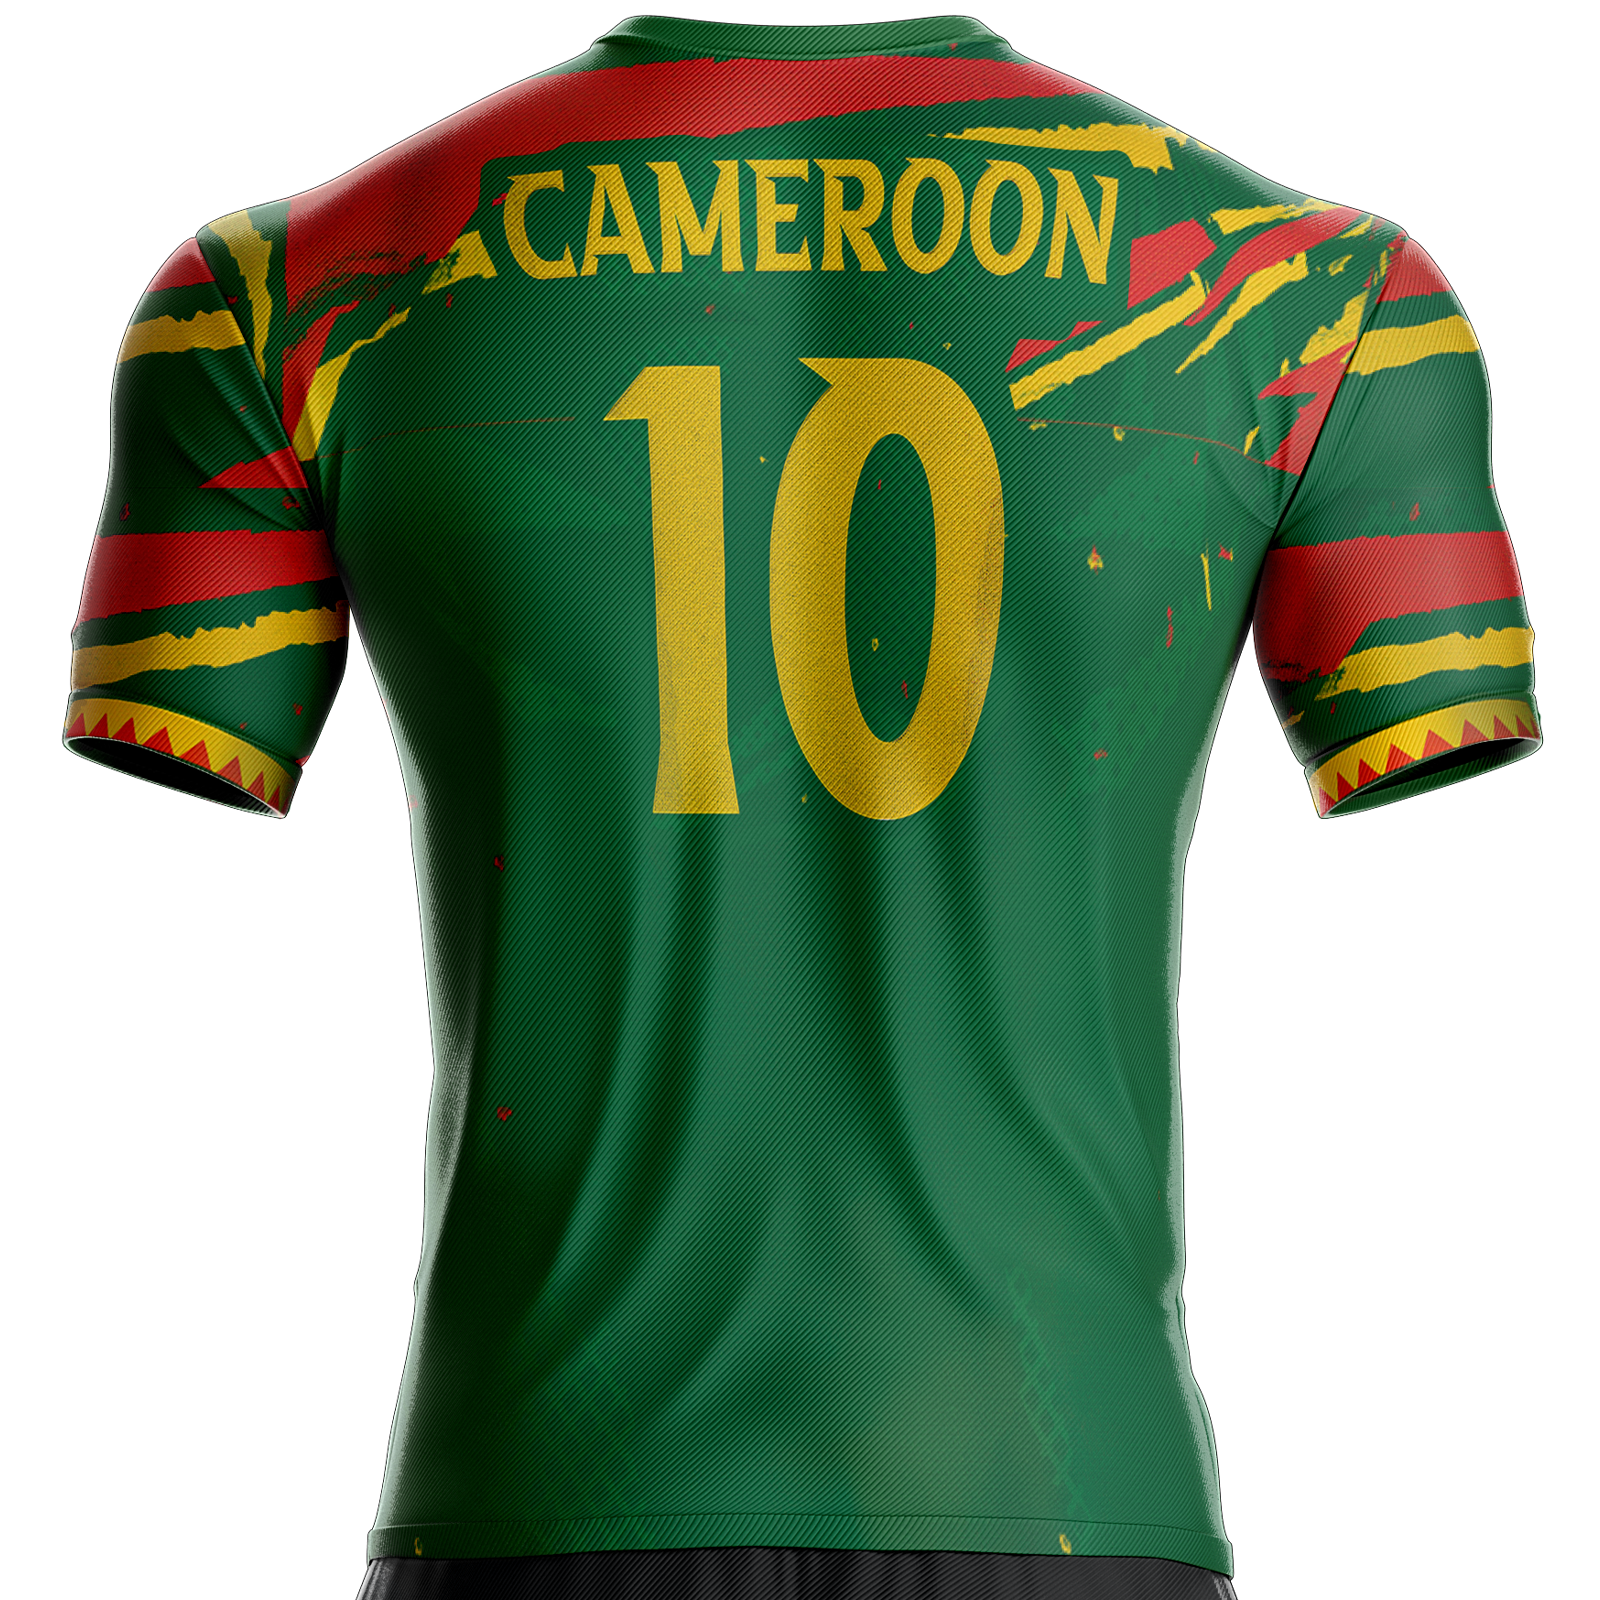 44,90 € - Maillot Cameroun football CR-4 pour supporter